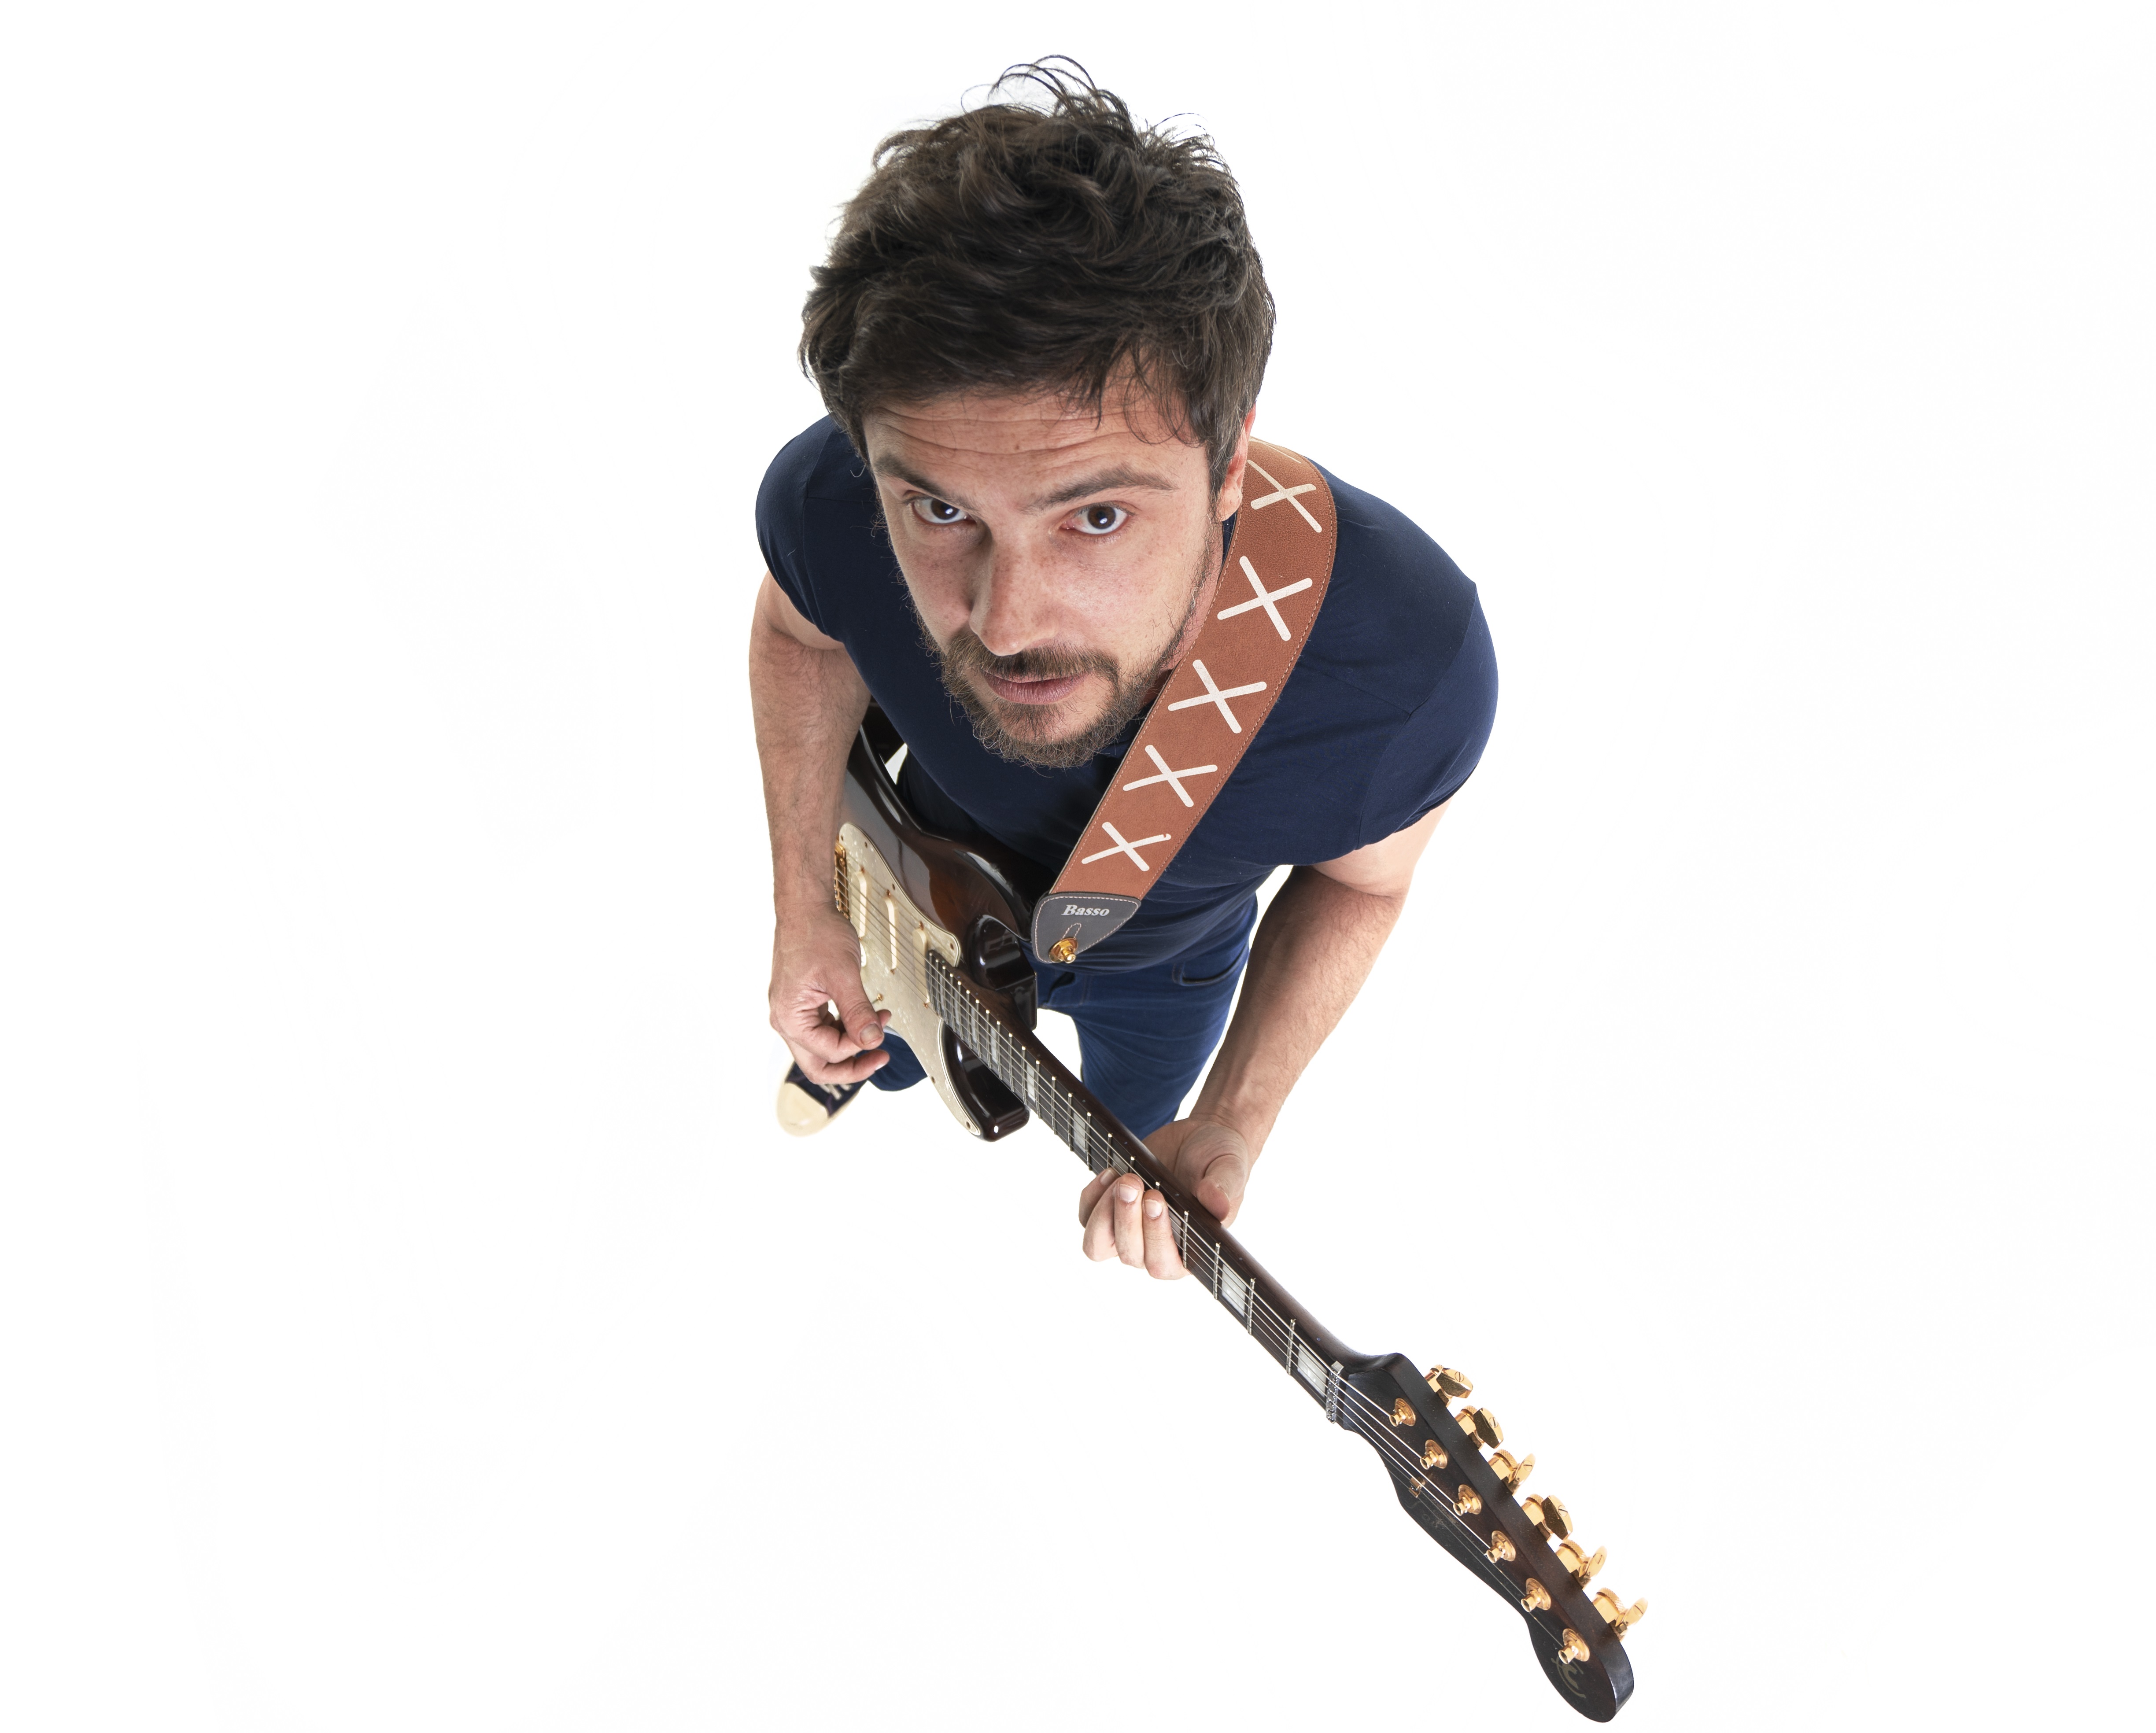 Foto do alto, com Sérgio Guizé visto de cima segurando uma guitarra.